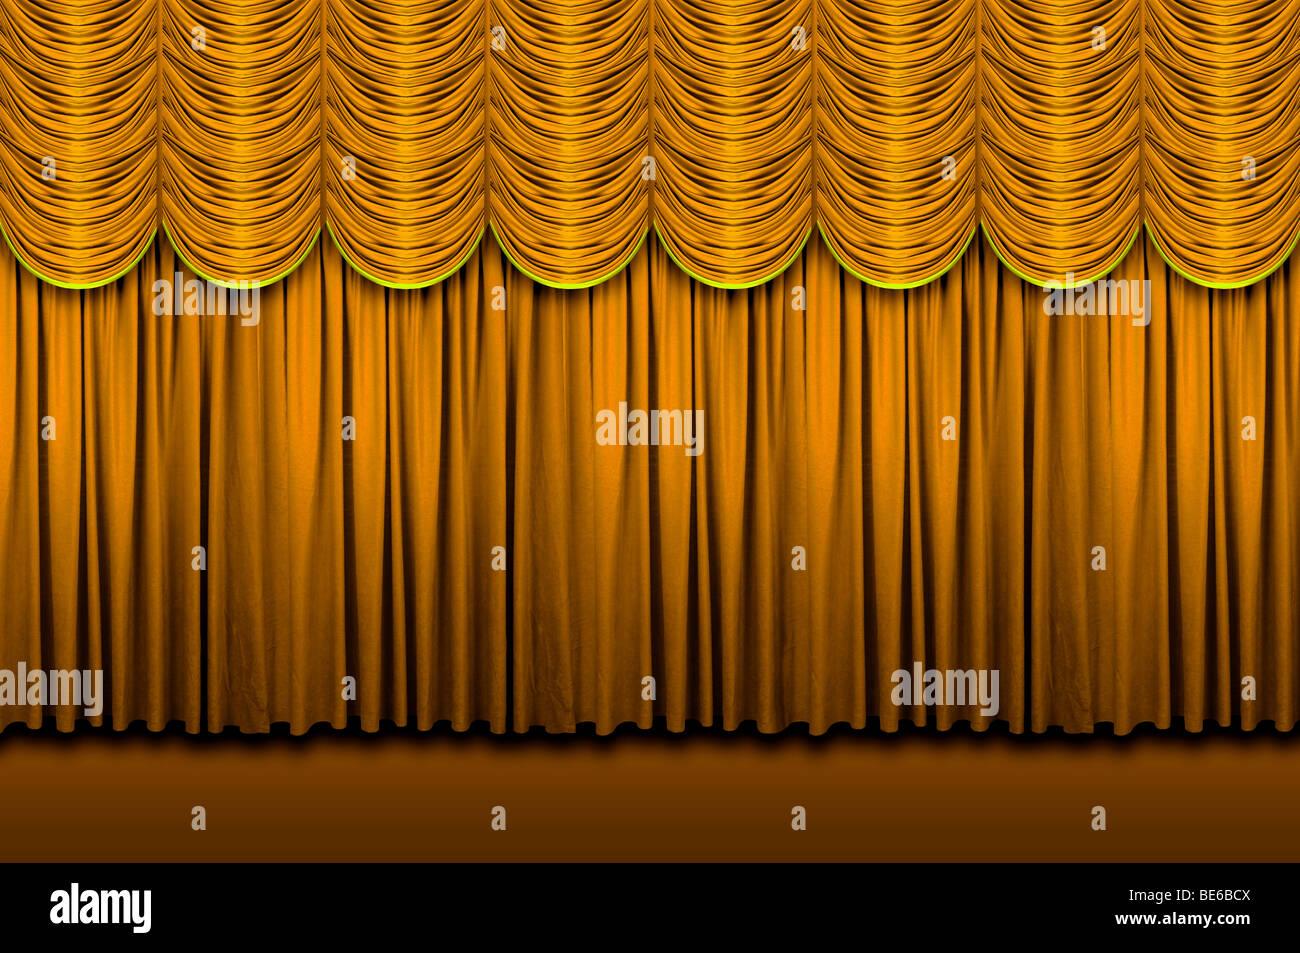 Grand golden rideaux de scène sur scène Banque D'Images